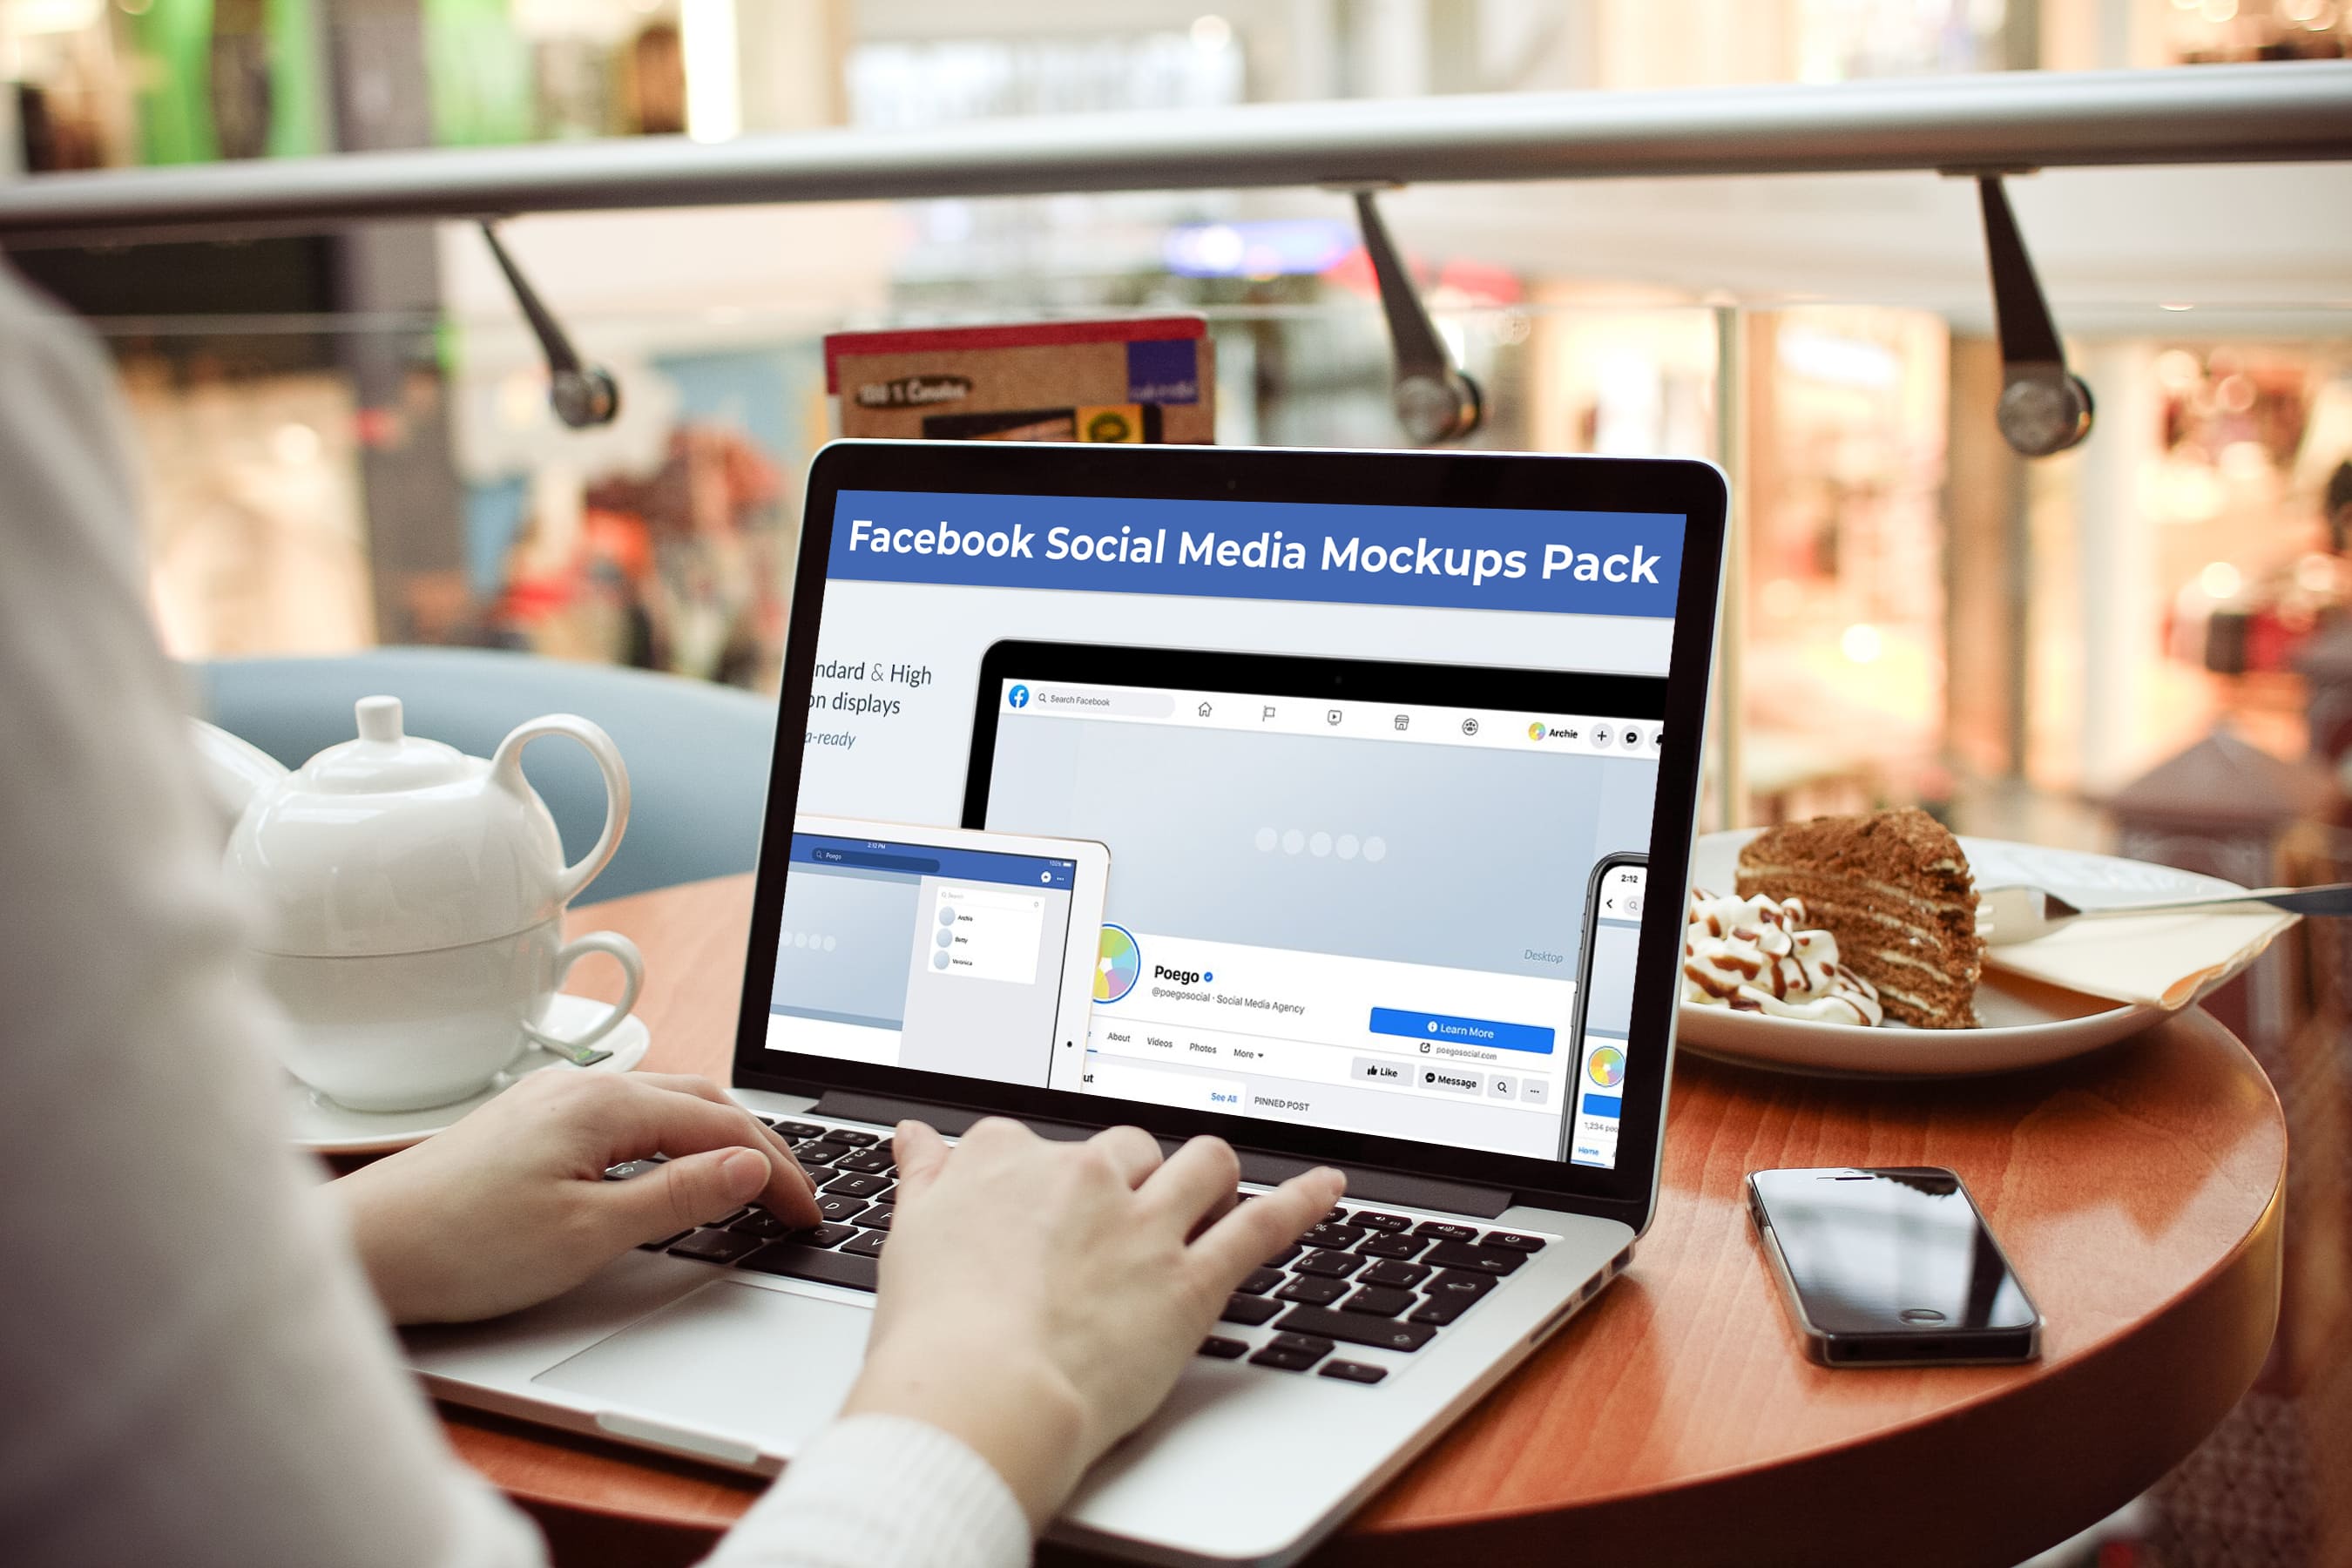 Laptop option of the Facebook Social Media Mockups Pack.